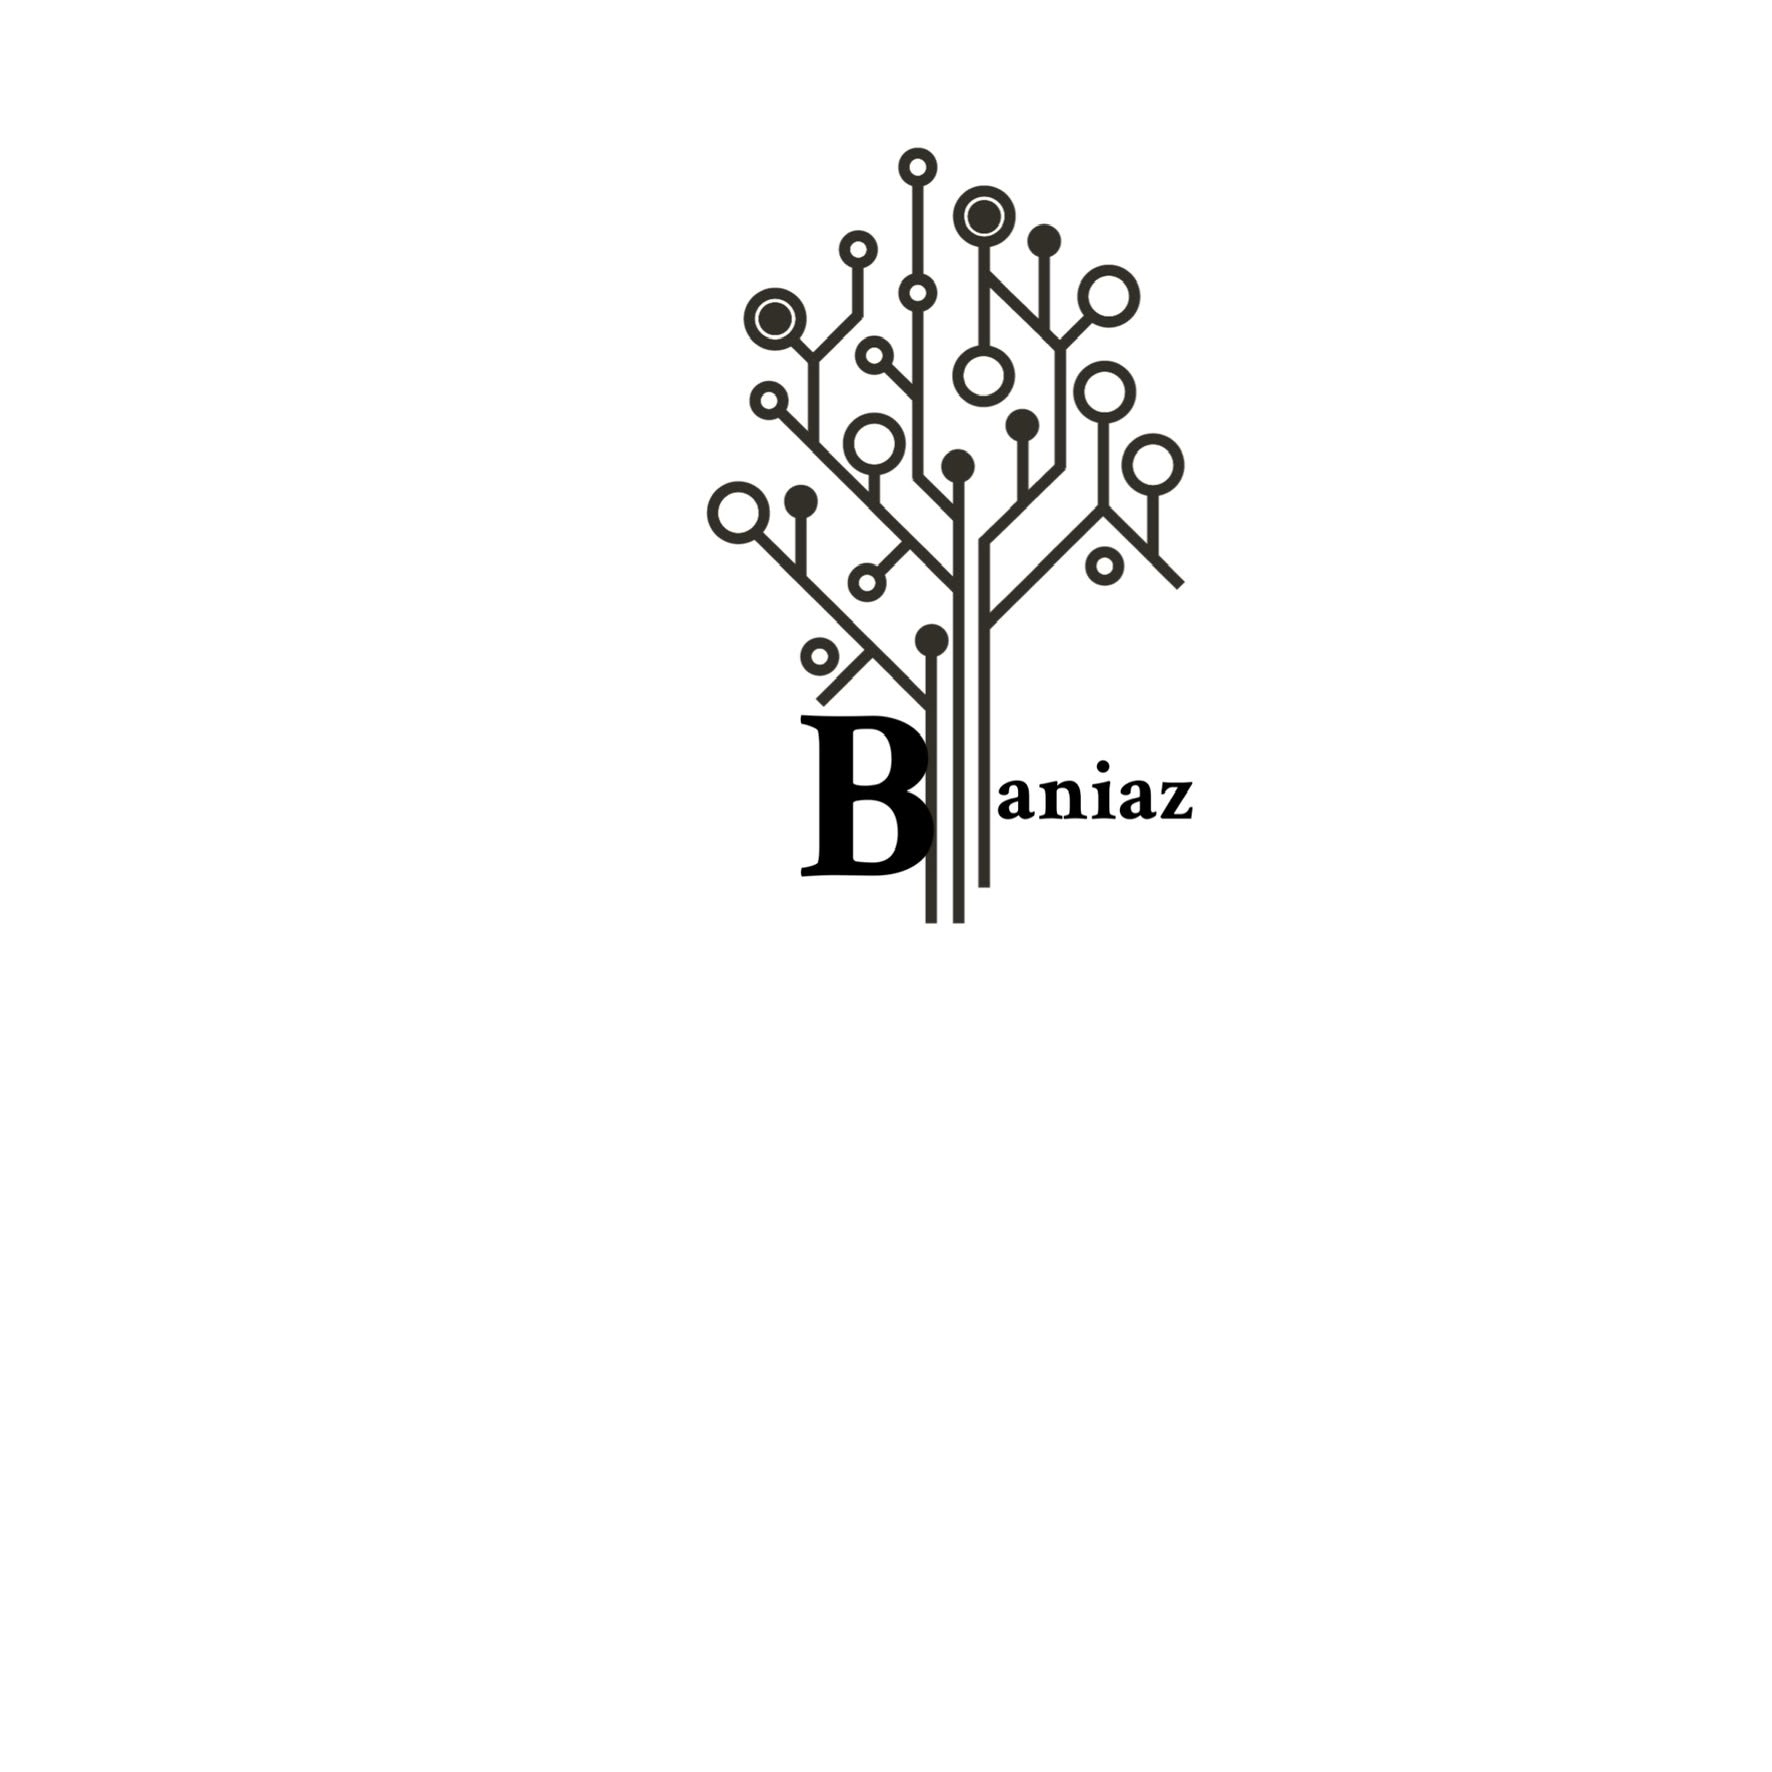 Baniaz Tech Startup